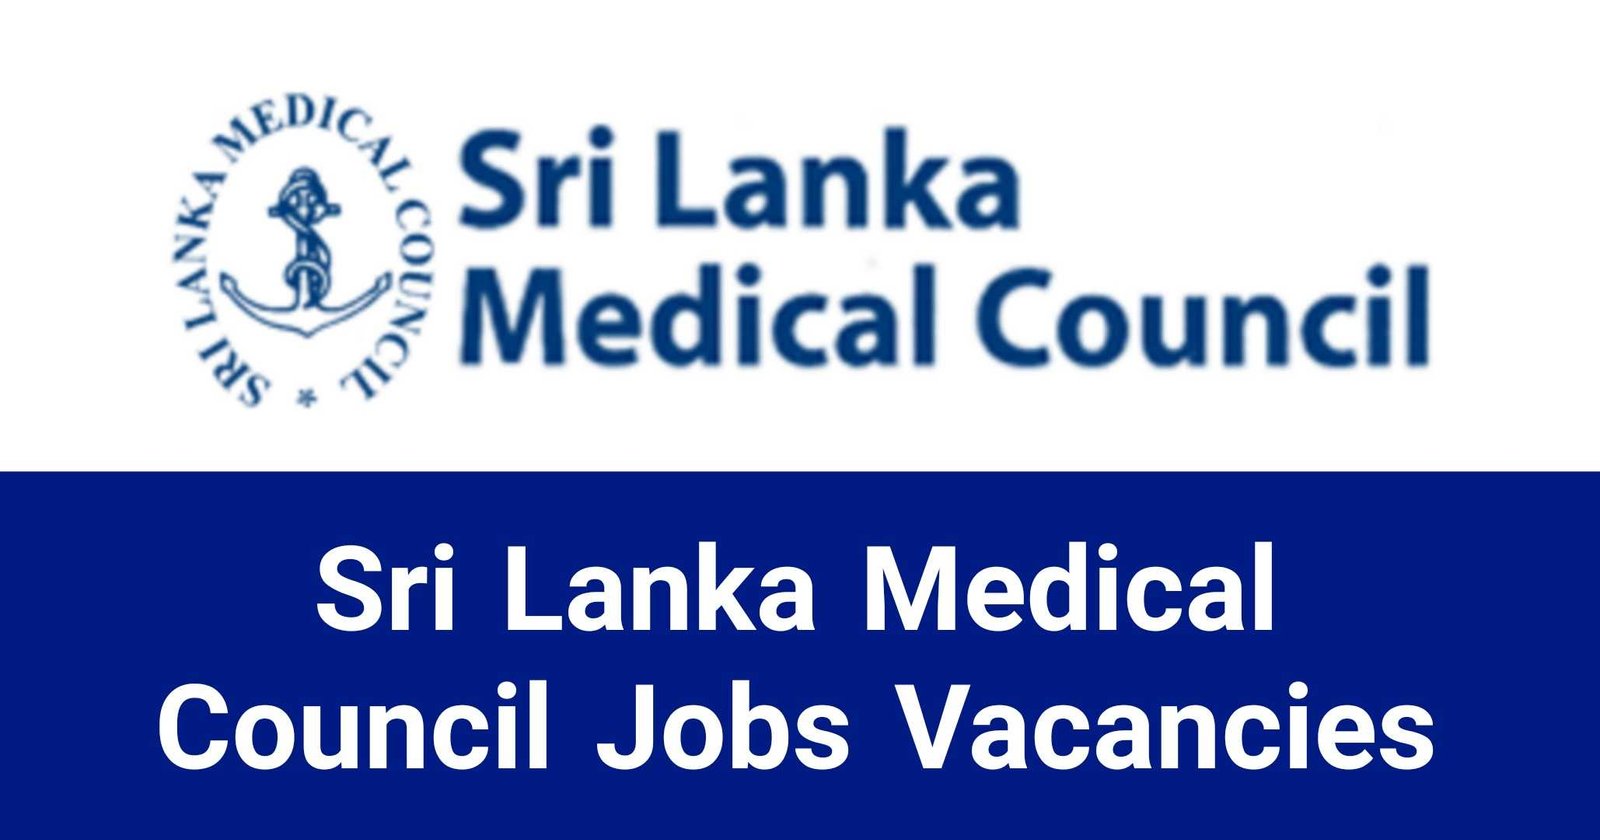 Sri Lanka Medical Council Jobs Vacancies Applications